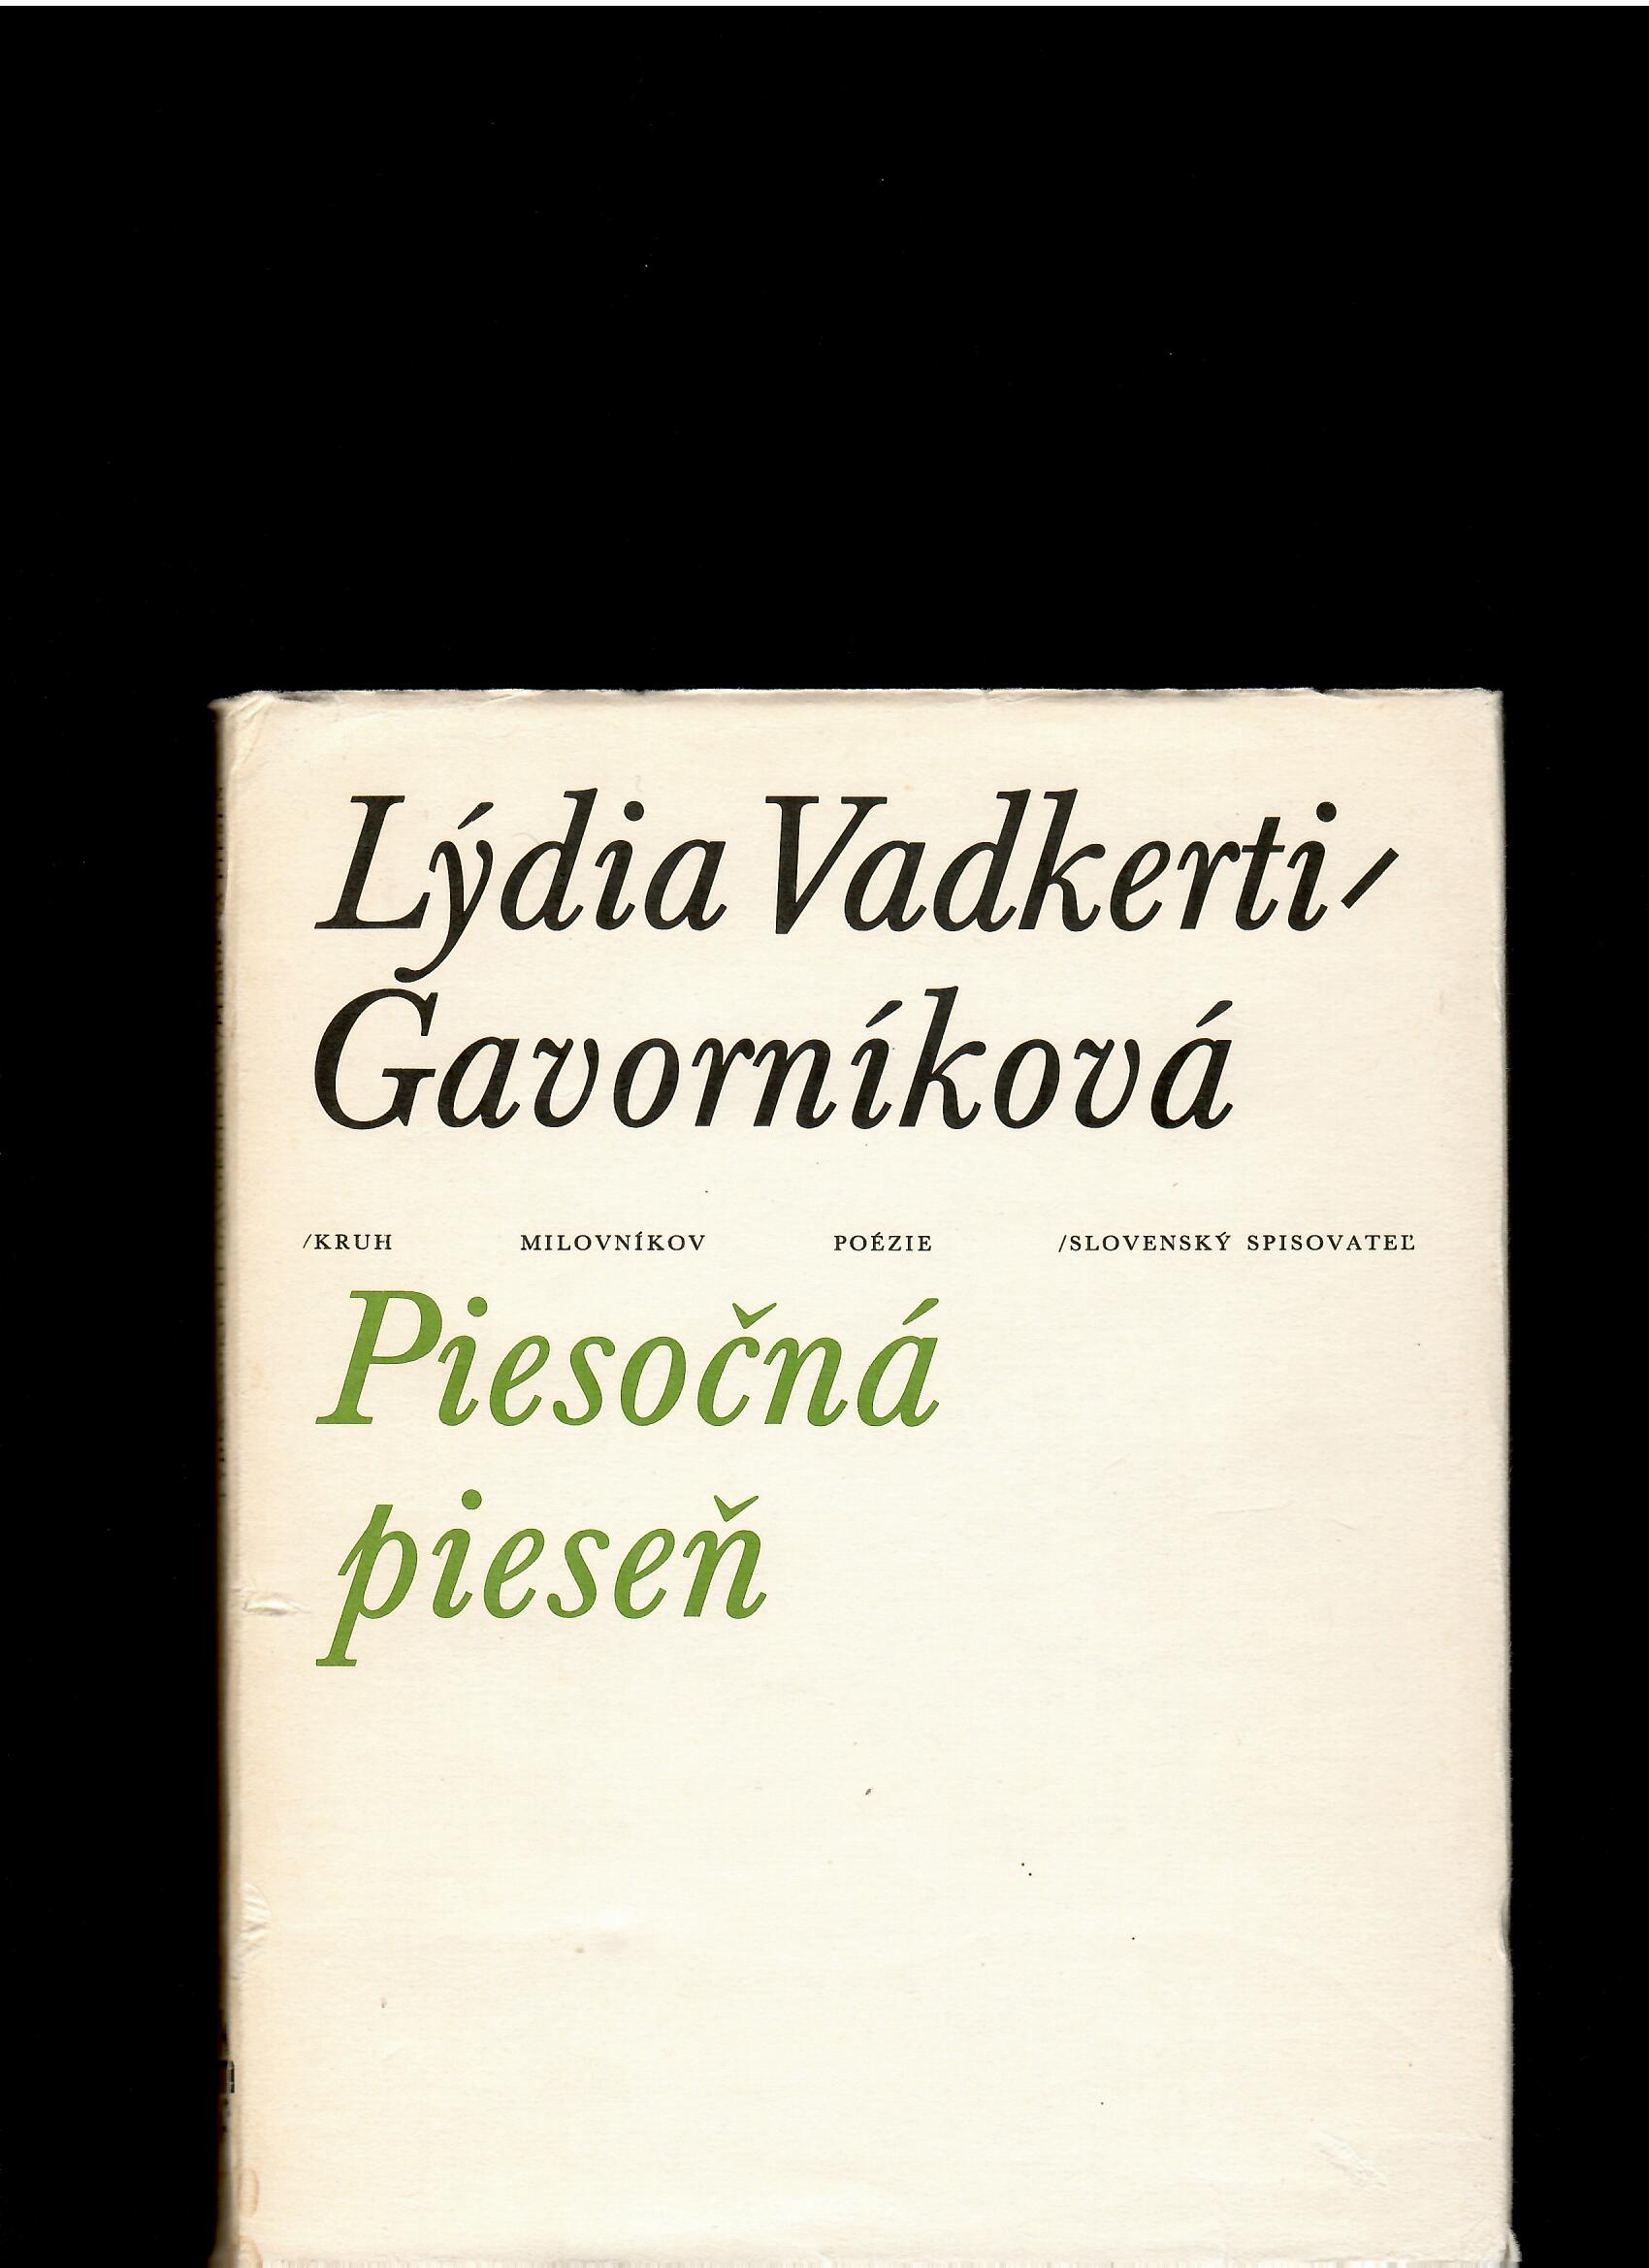 Lýdia Vadkerti-Gavorníková: Piesočná pieseň /il. Júlia Buková/